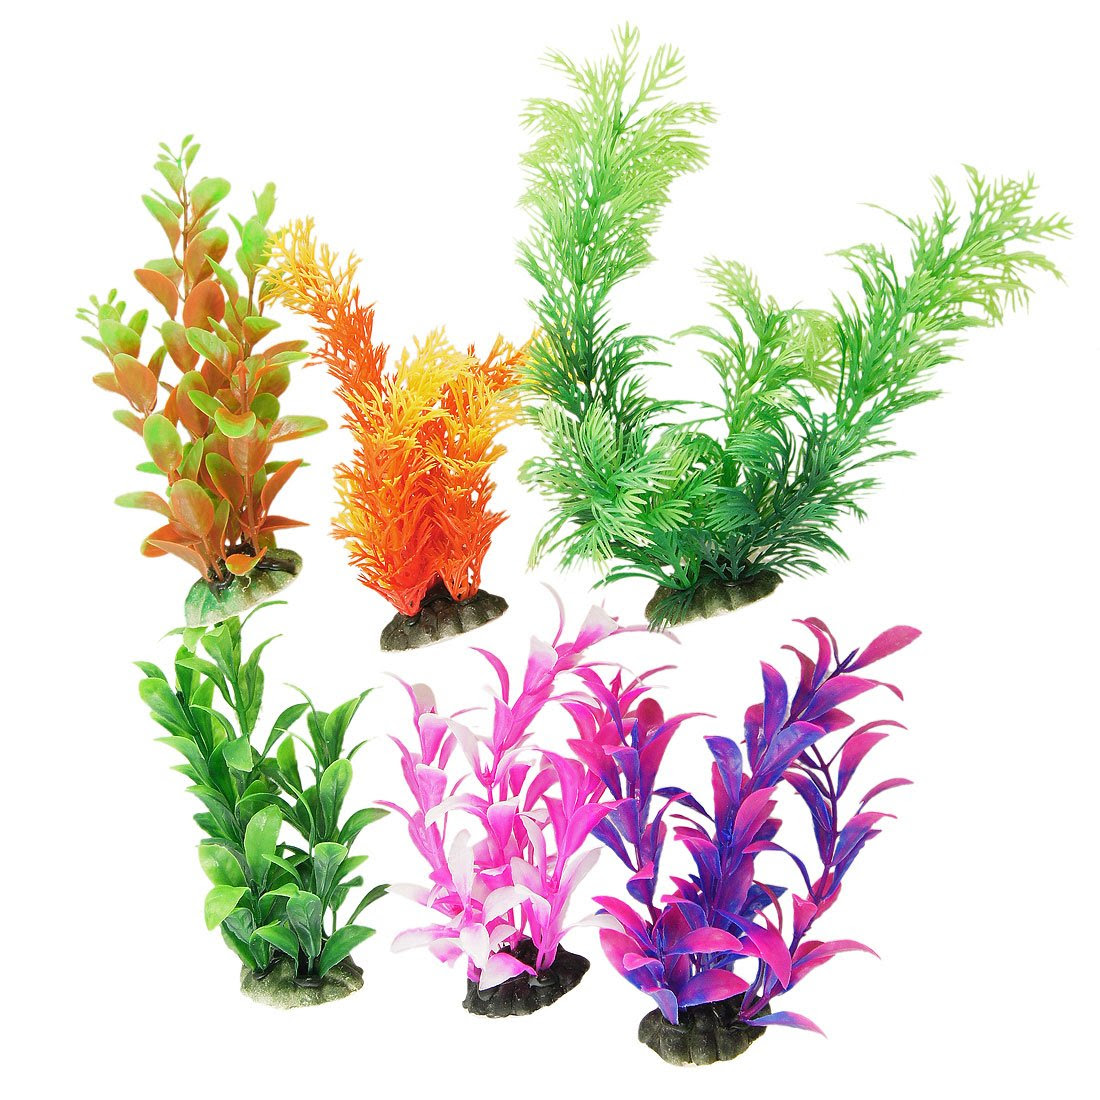 Aquarium Décor: Amazon.com: Coral Ornaments, Aquarium Plants, & Gravel